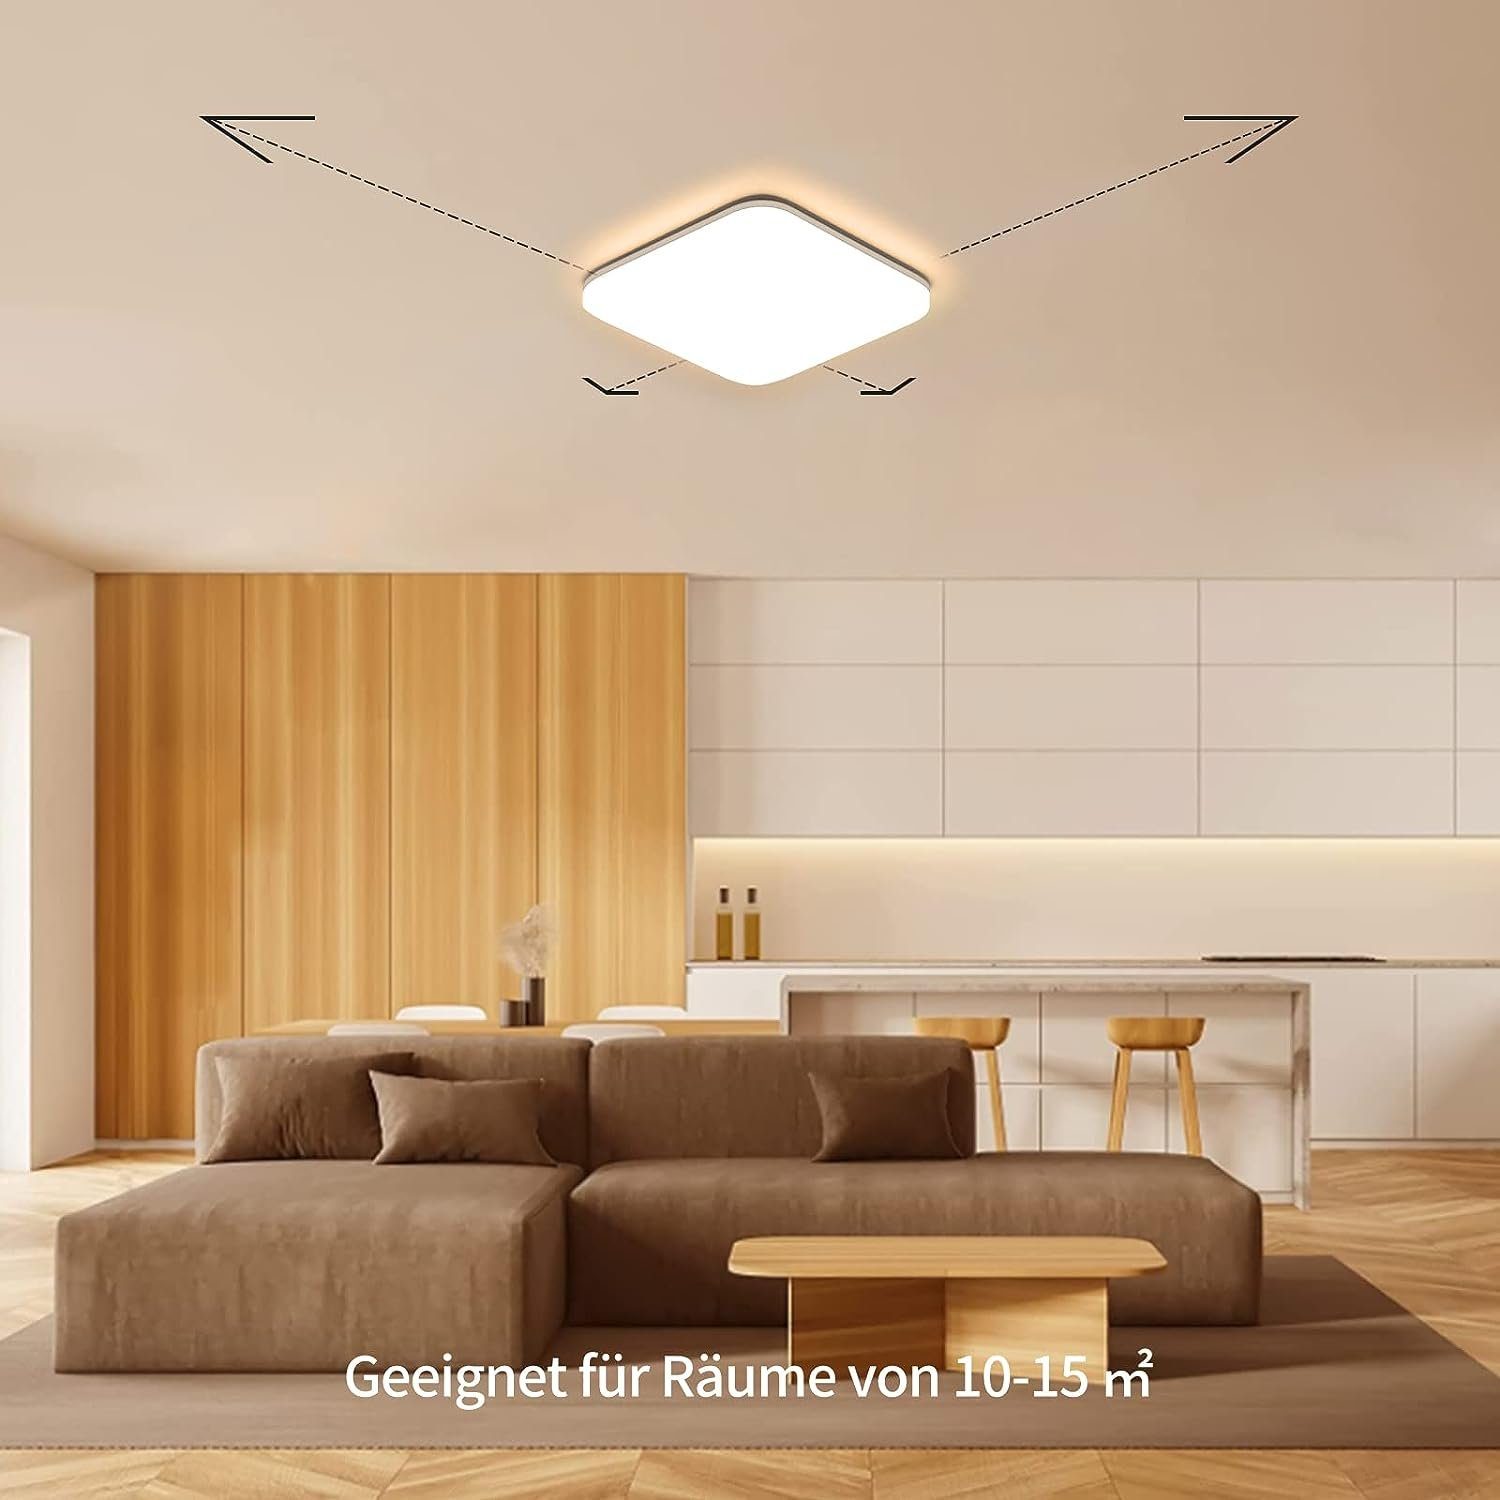 Decke, IP54 fest Wasserfest Deckenleuchte Badlampe LED Rund integriert Badezimmer ZMH LED Deckenlampe